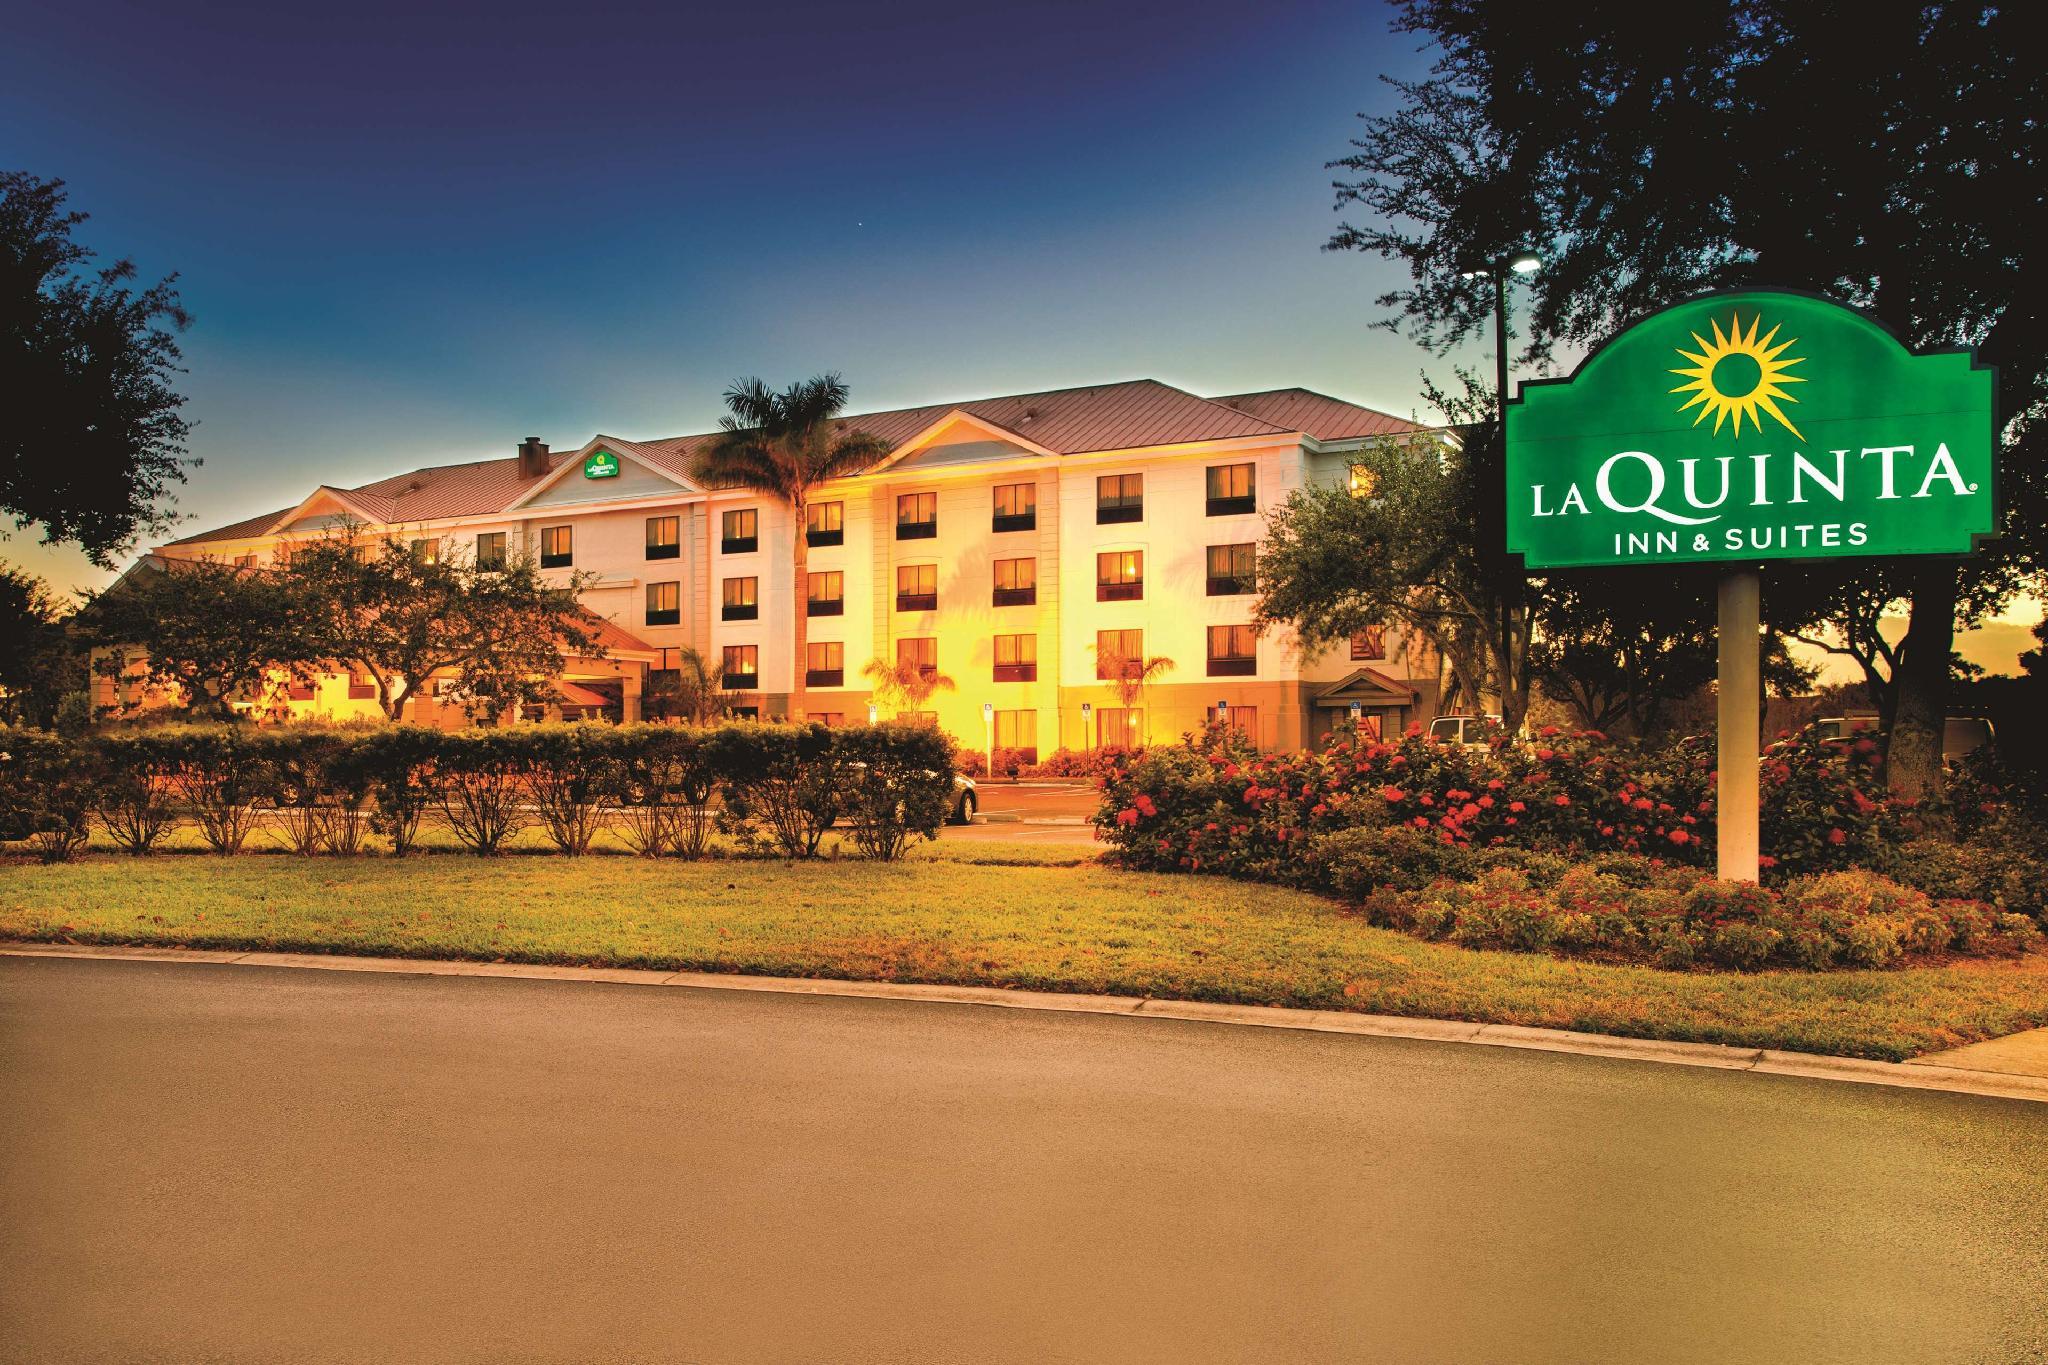 La Quinta Inn and Suites Bonita Springs